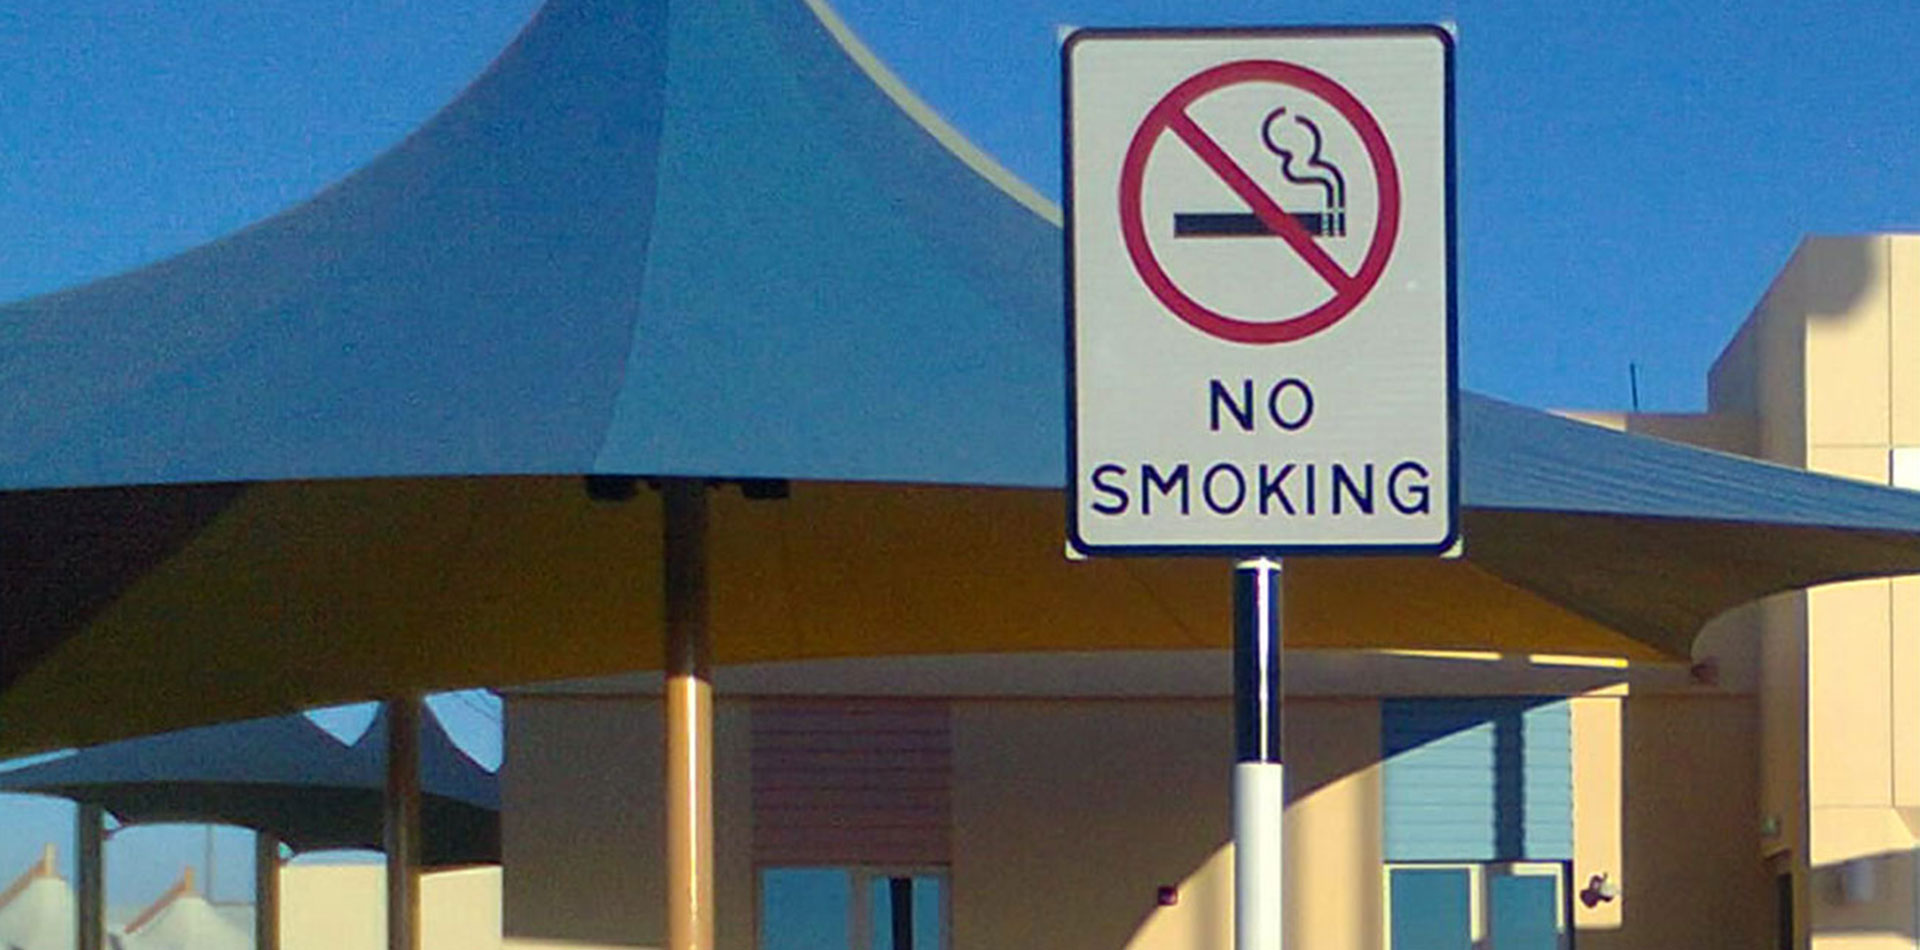 No Smoking Warning Signage